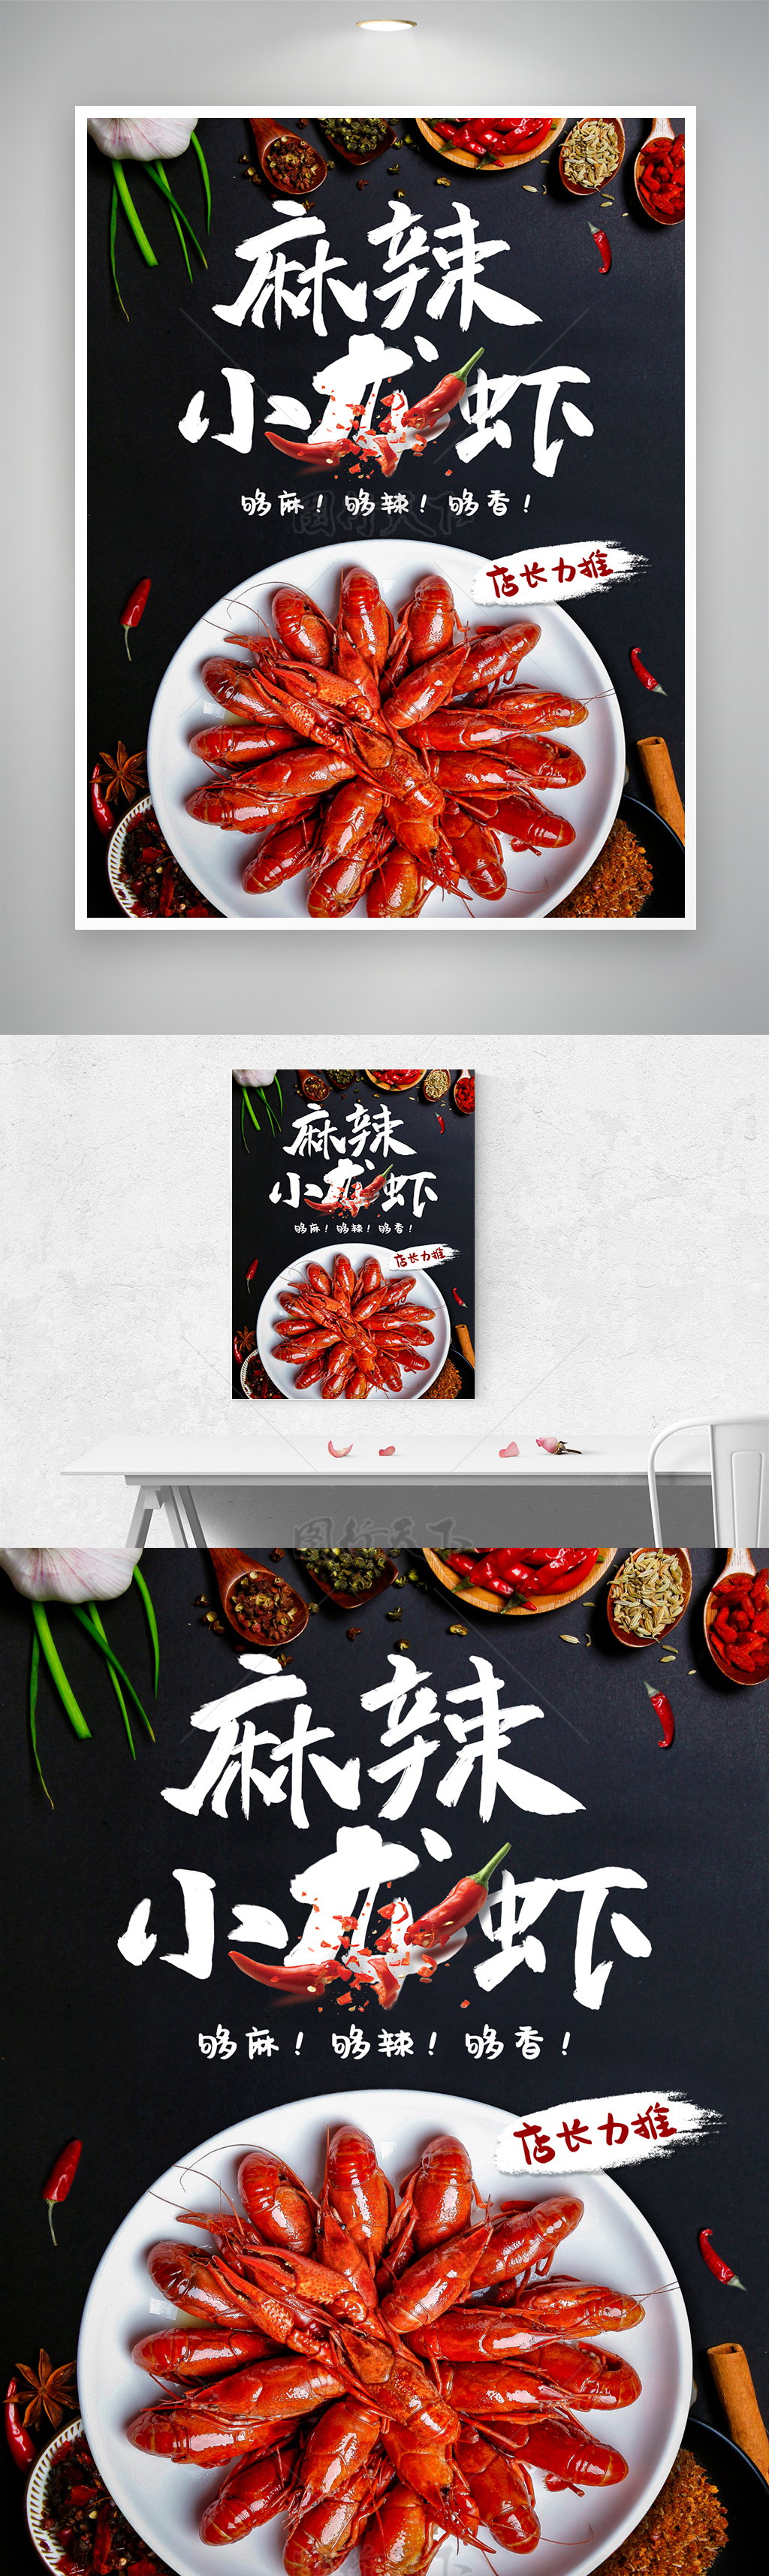 麻辣小龙虾促销美味美食海报